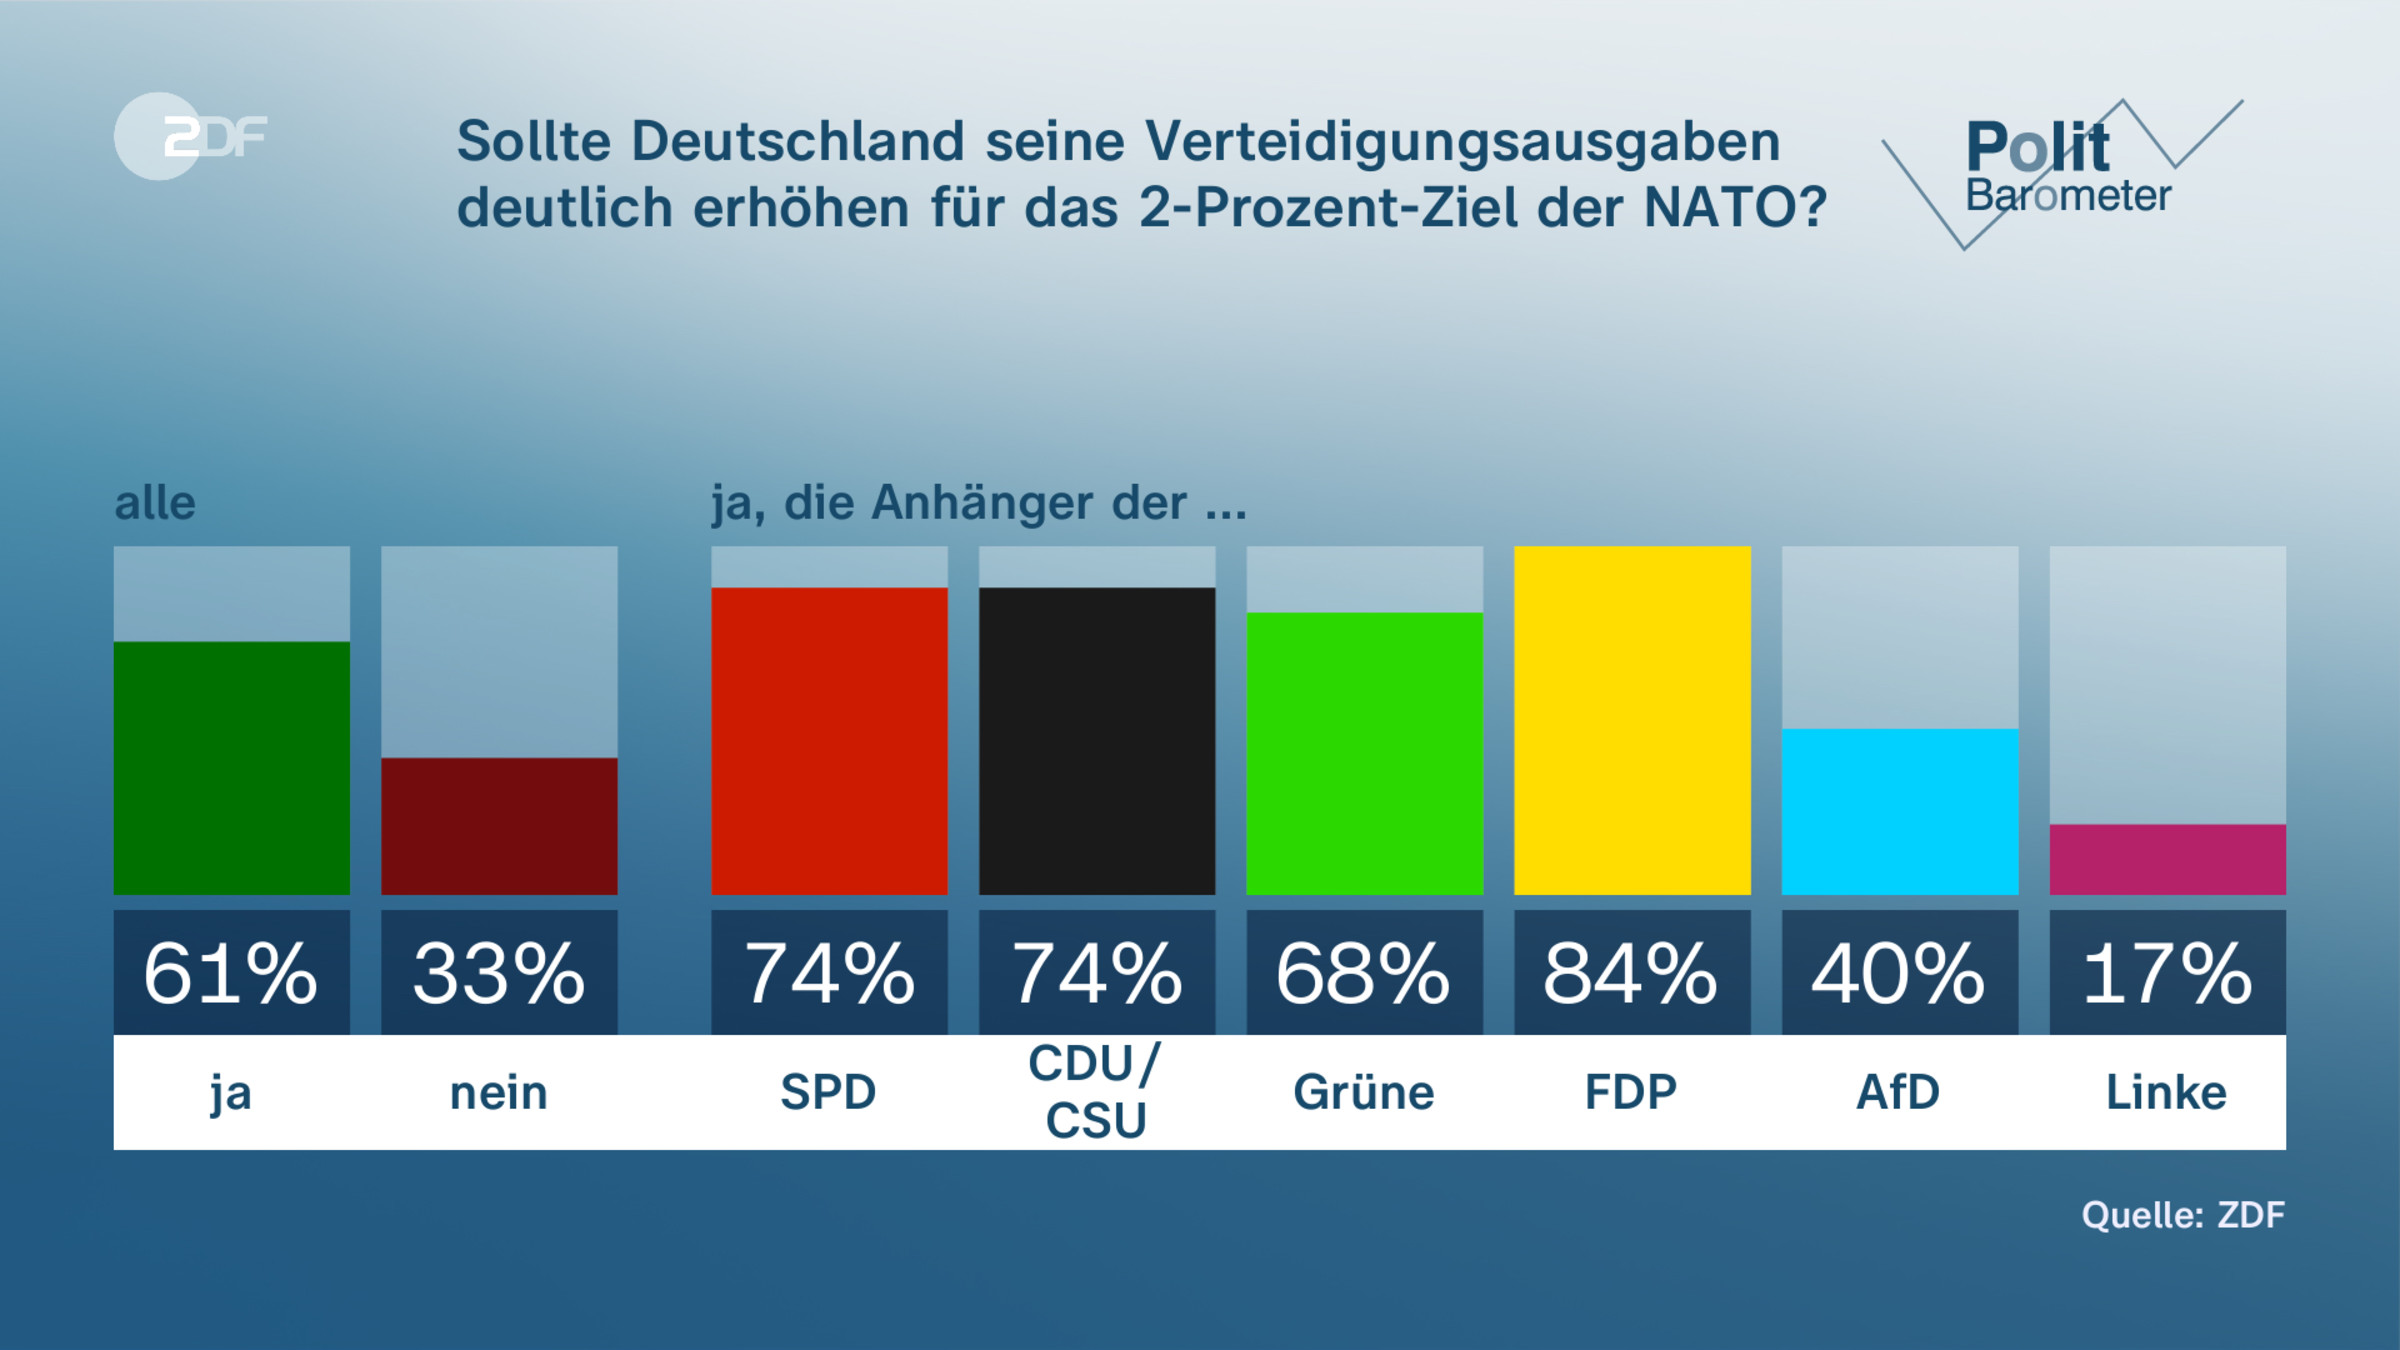 Sollte Deutschland seine Verteidigungsausgaben deutlich erhöhen für das 2-Prozent-Ziel der NATO? 